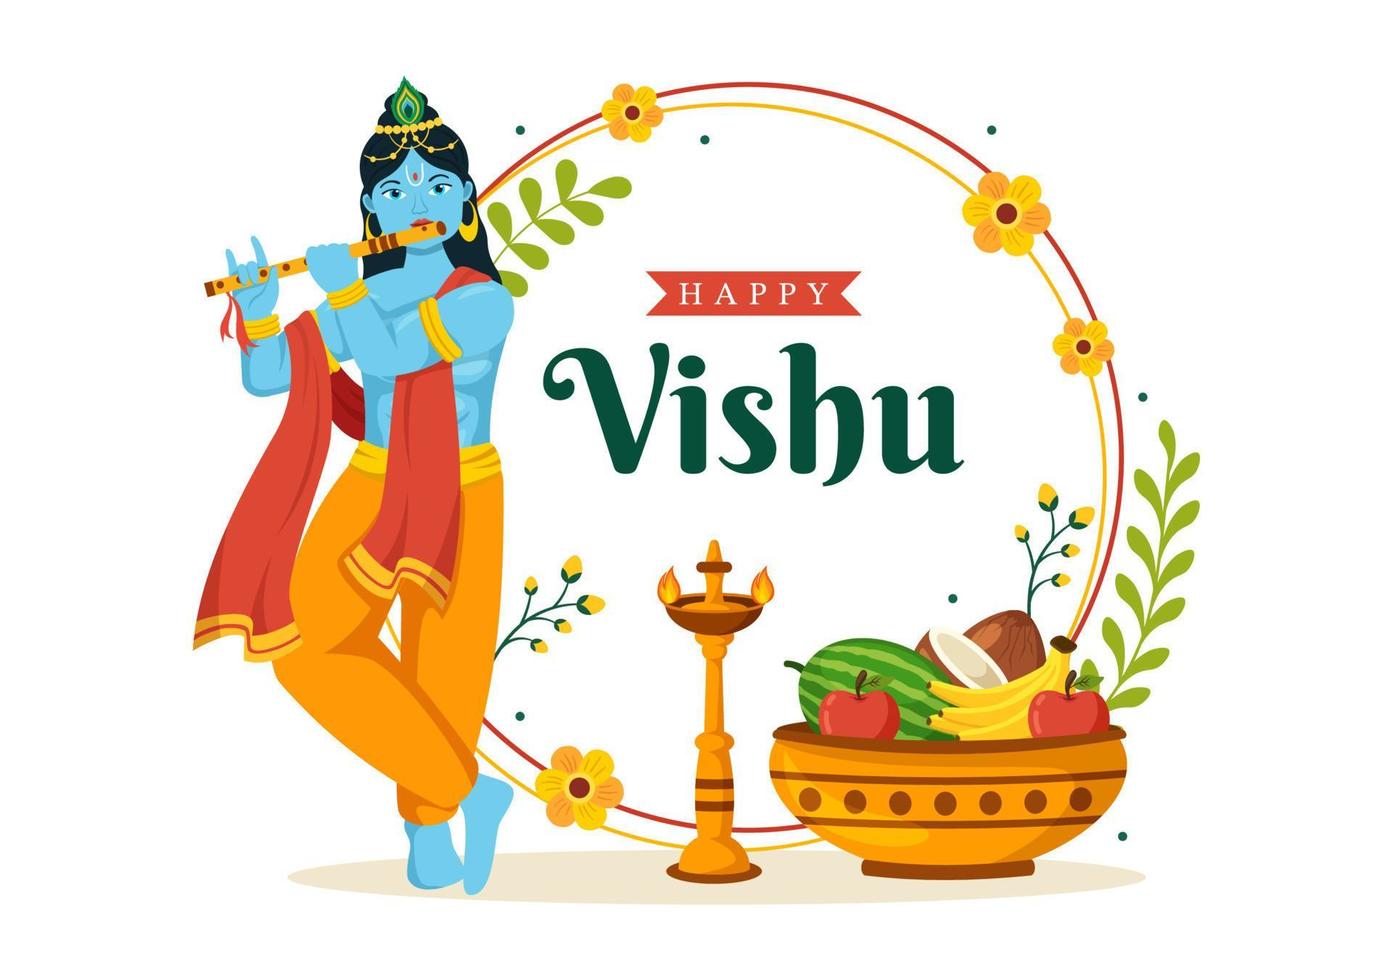 content vishu Festival illustration avec traditionnel Kerala kani, des fruits et des légumes pour atterrissage page dans plat dessin animé main tiré modèles vecteur